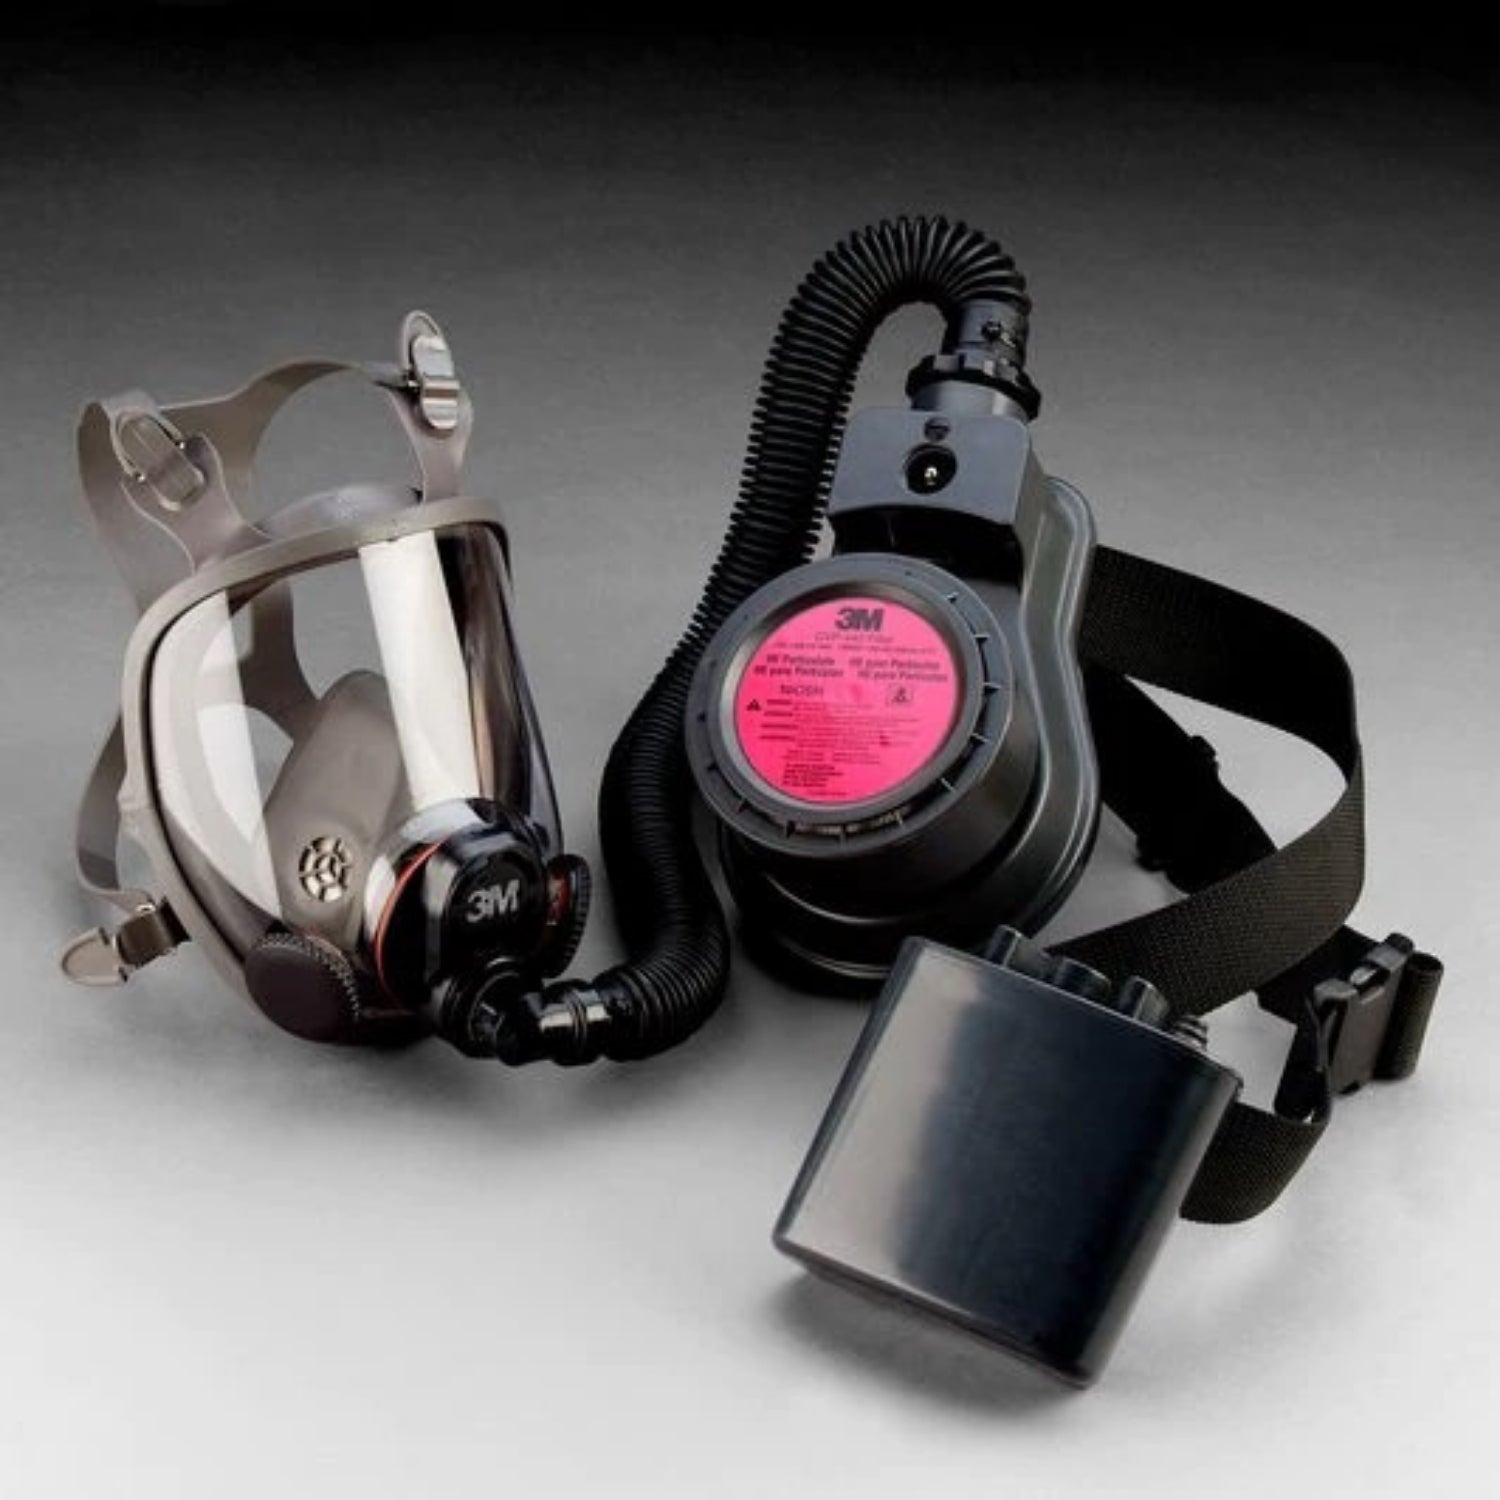 3M™ Full Facepiece Reusable Respirator 6700DIN Small